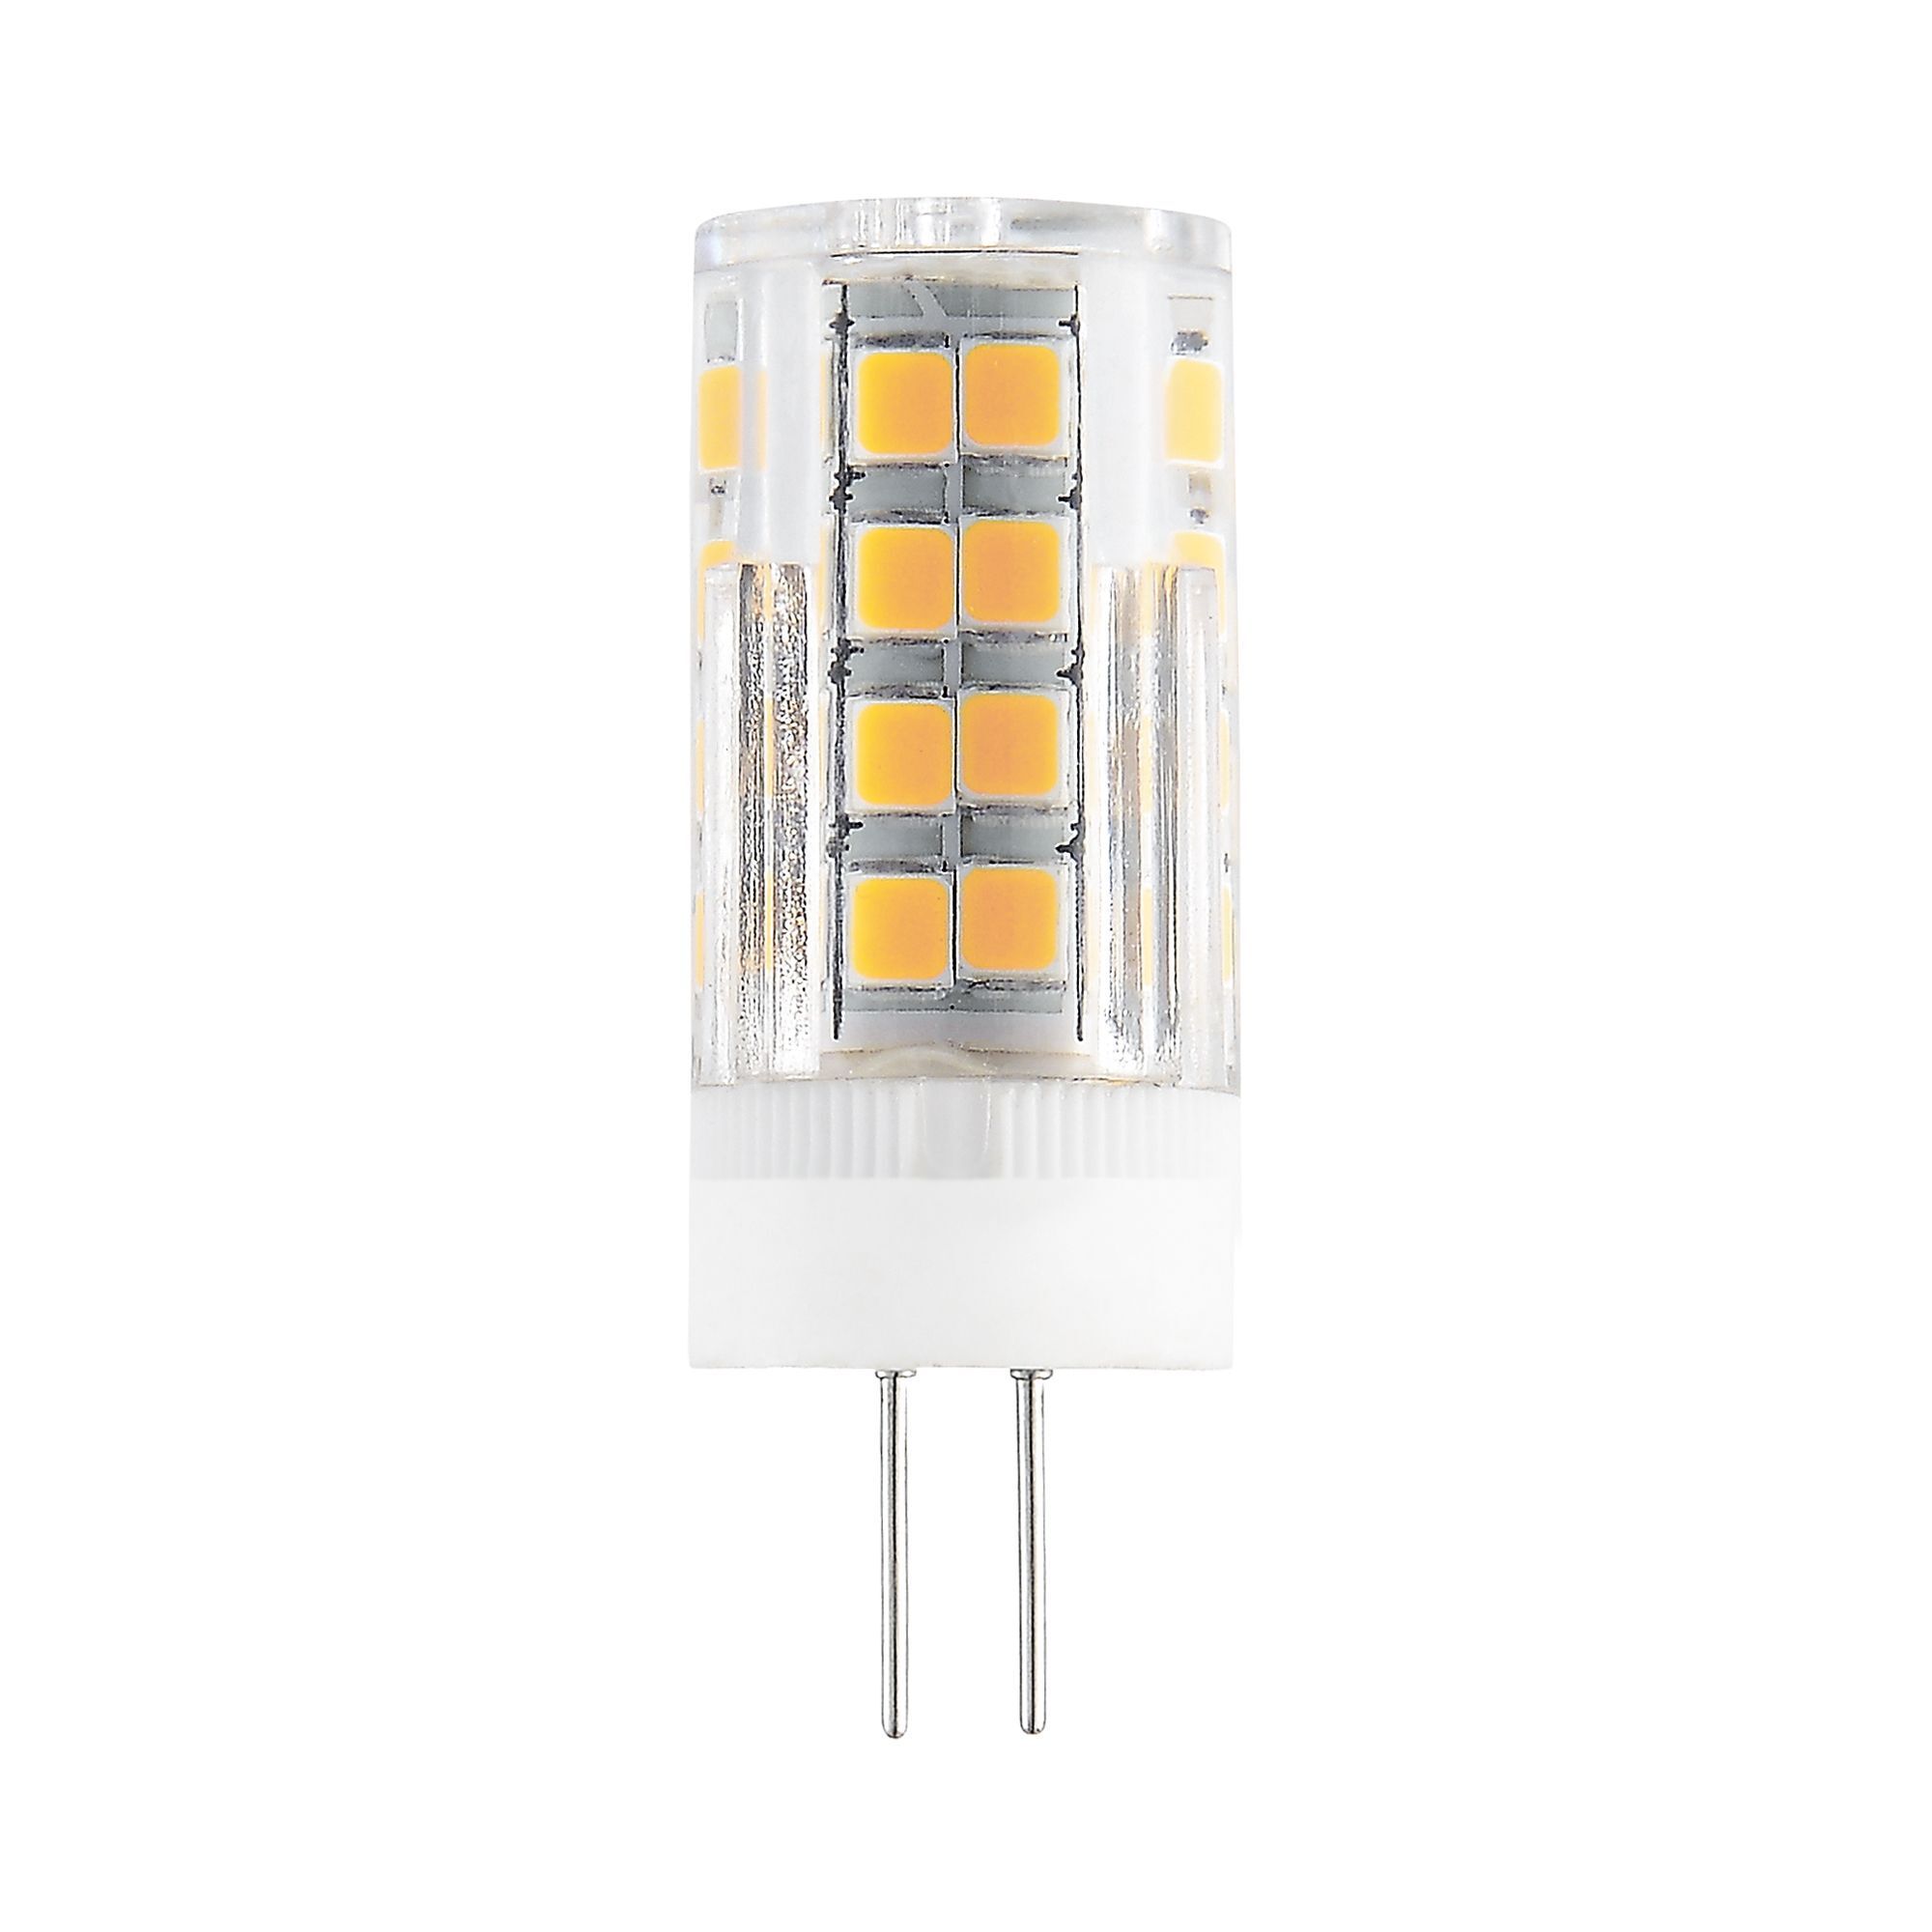 Лампа светодиодная Elektrostandard G4 JC 7 Вт 4200К естественный свет 220 В капсула (BLG406) лампа светодиодная elektrostandard g4 jcd 5 вт 4200к естественный свет 220 в капсула blg420